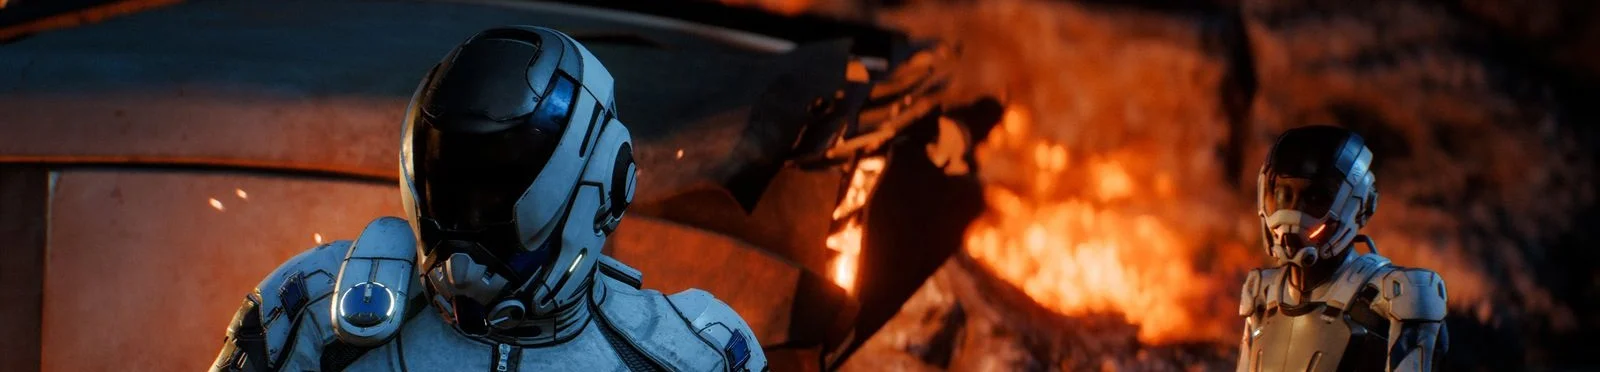 Год Mass Effect: Andromeda — вспоминаем, как погибала великая серия - фото 4